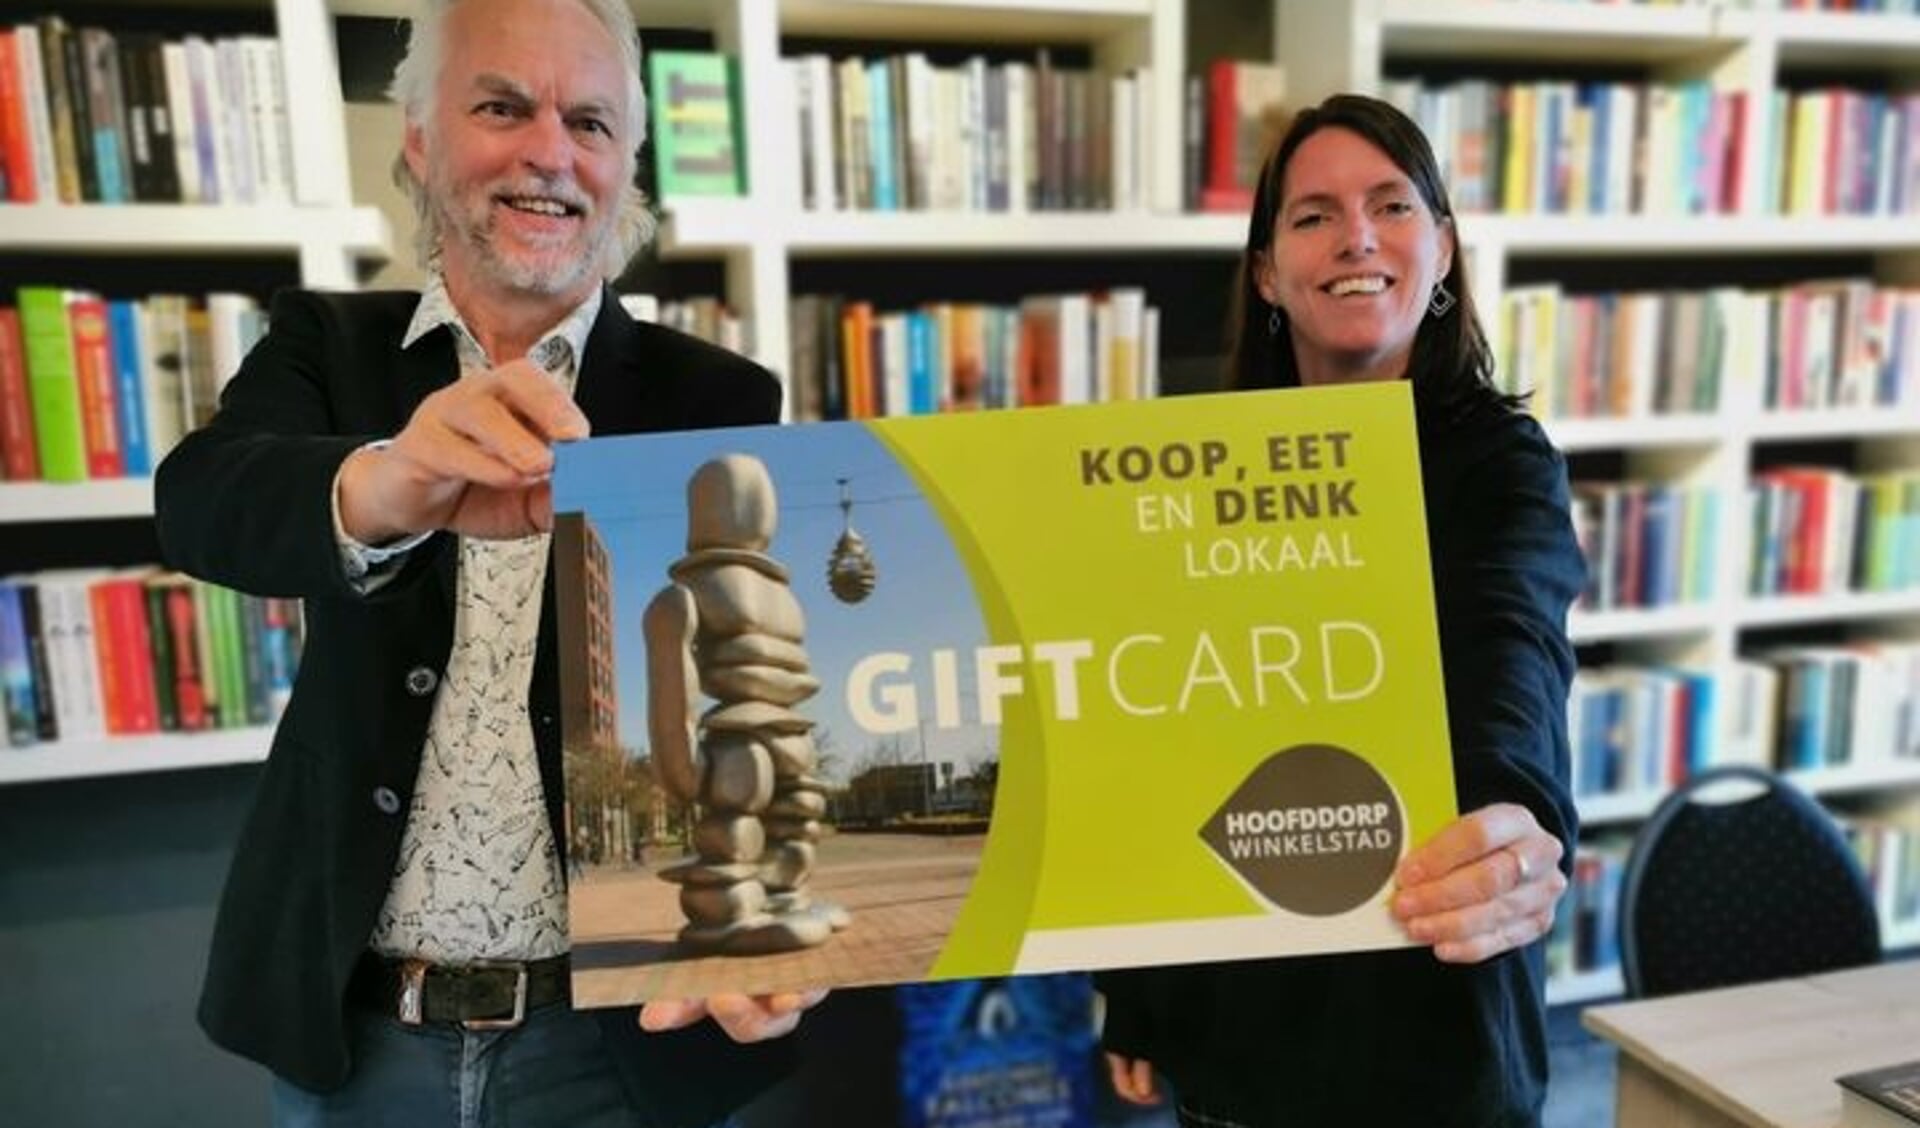 De Hoofddorp Winkelstad Giftcard onder andere bij Boekhandel Stevens te koop.